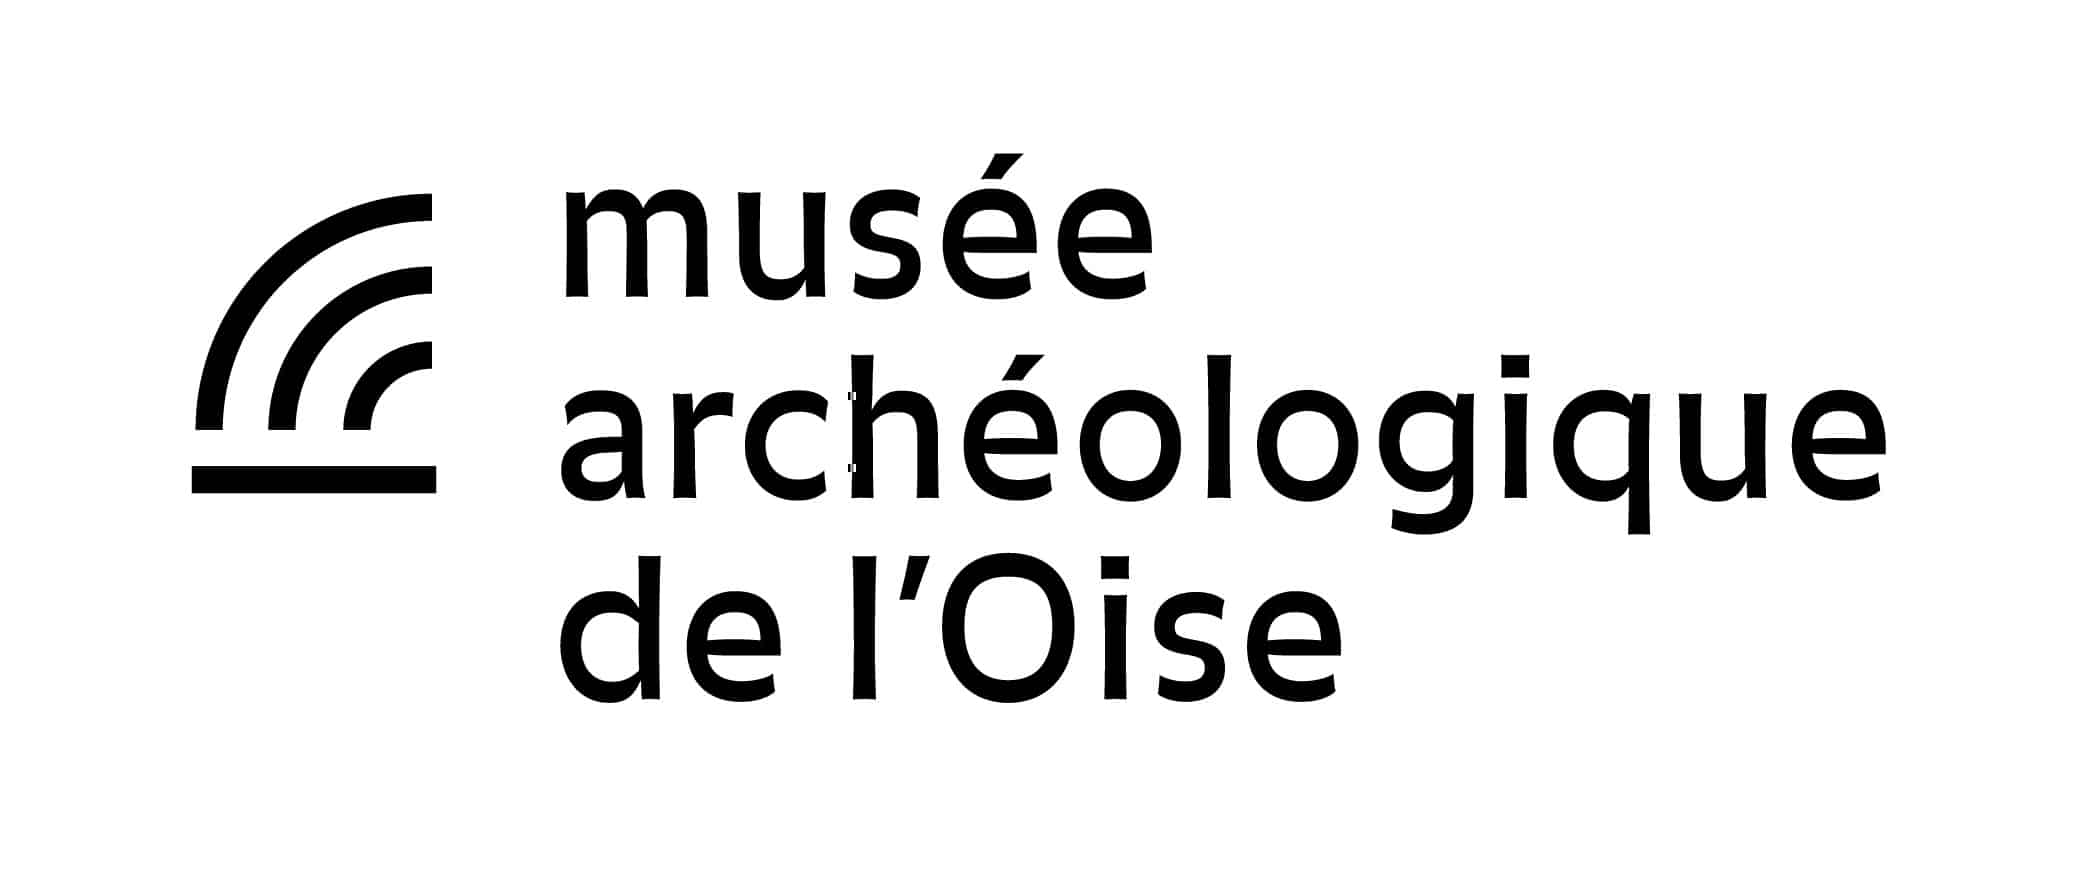 Musée archéologique de l'Oise